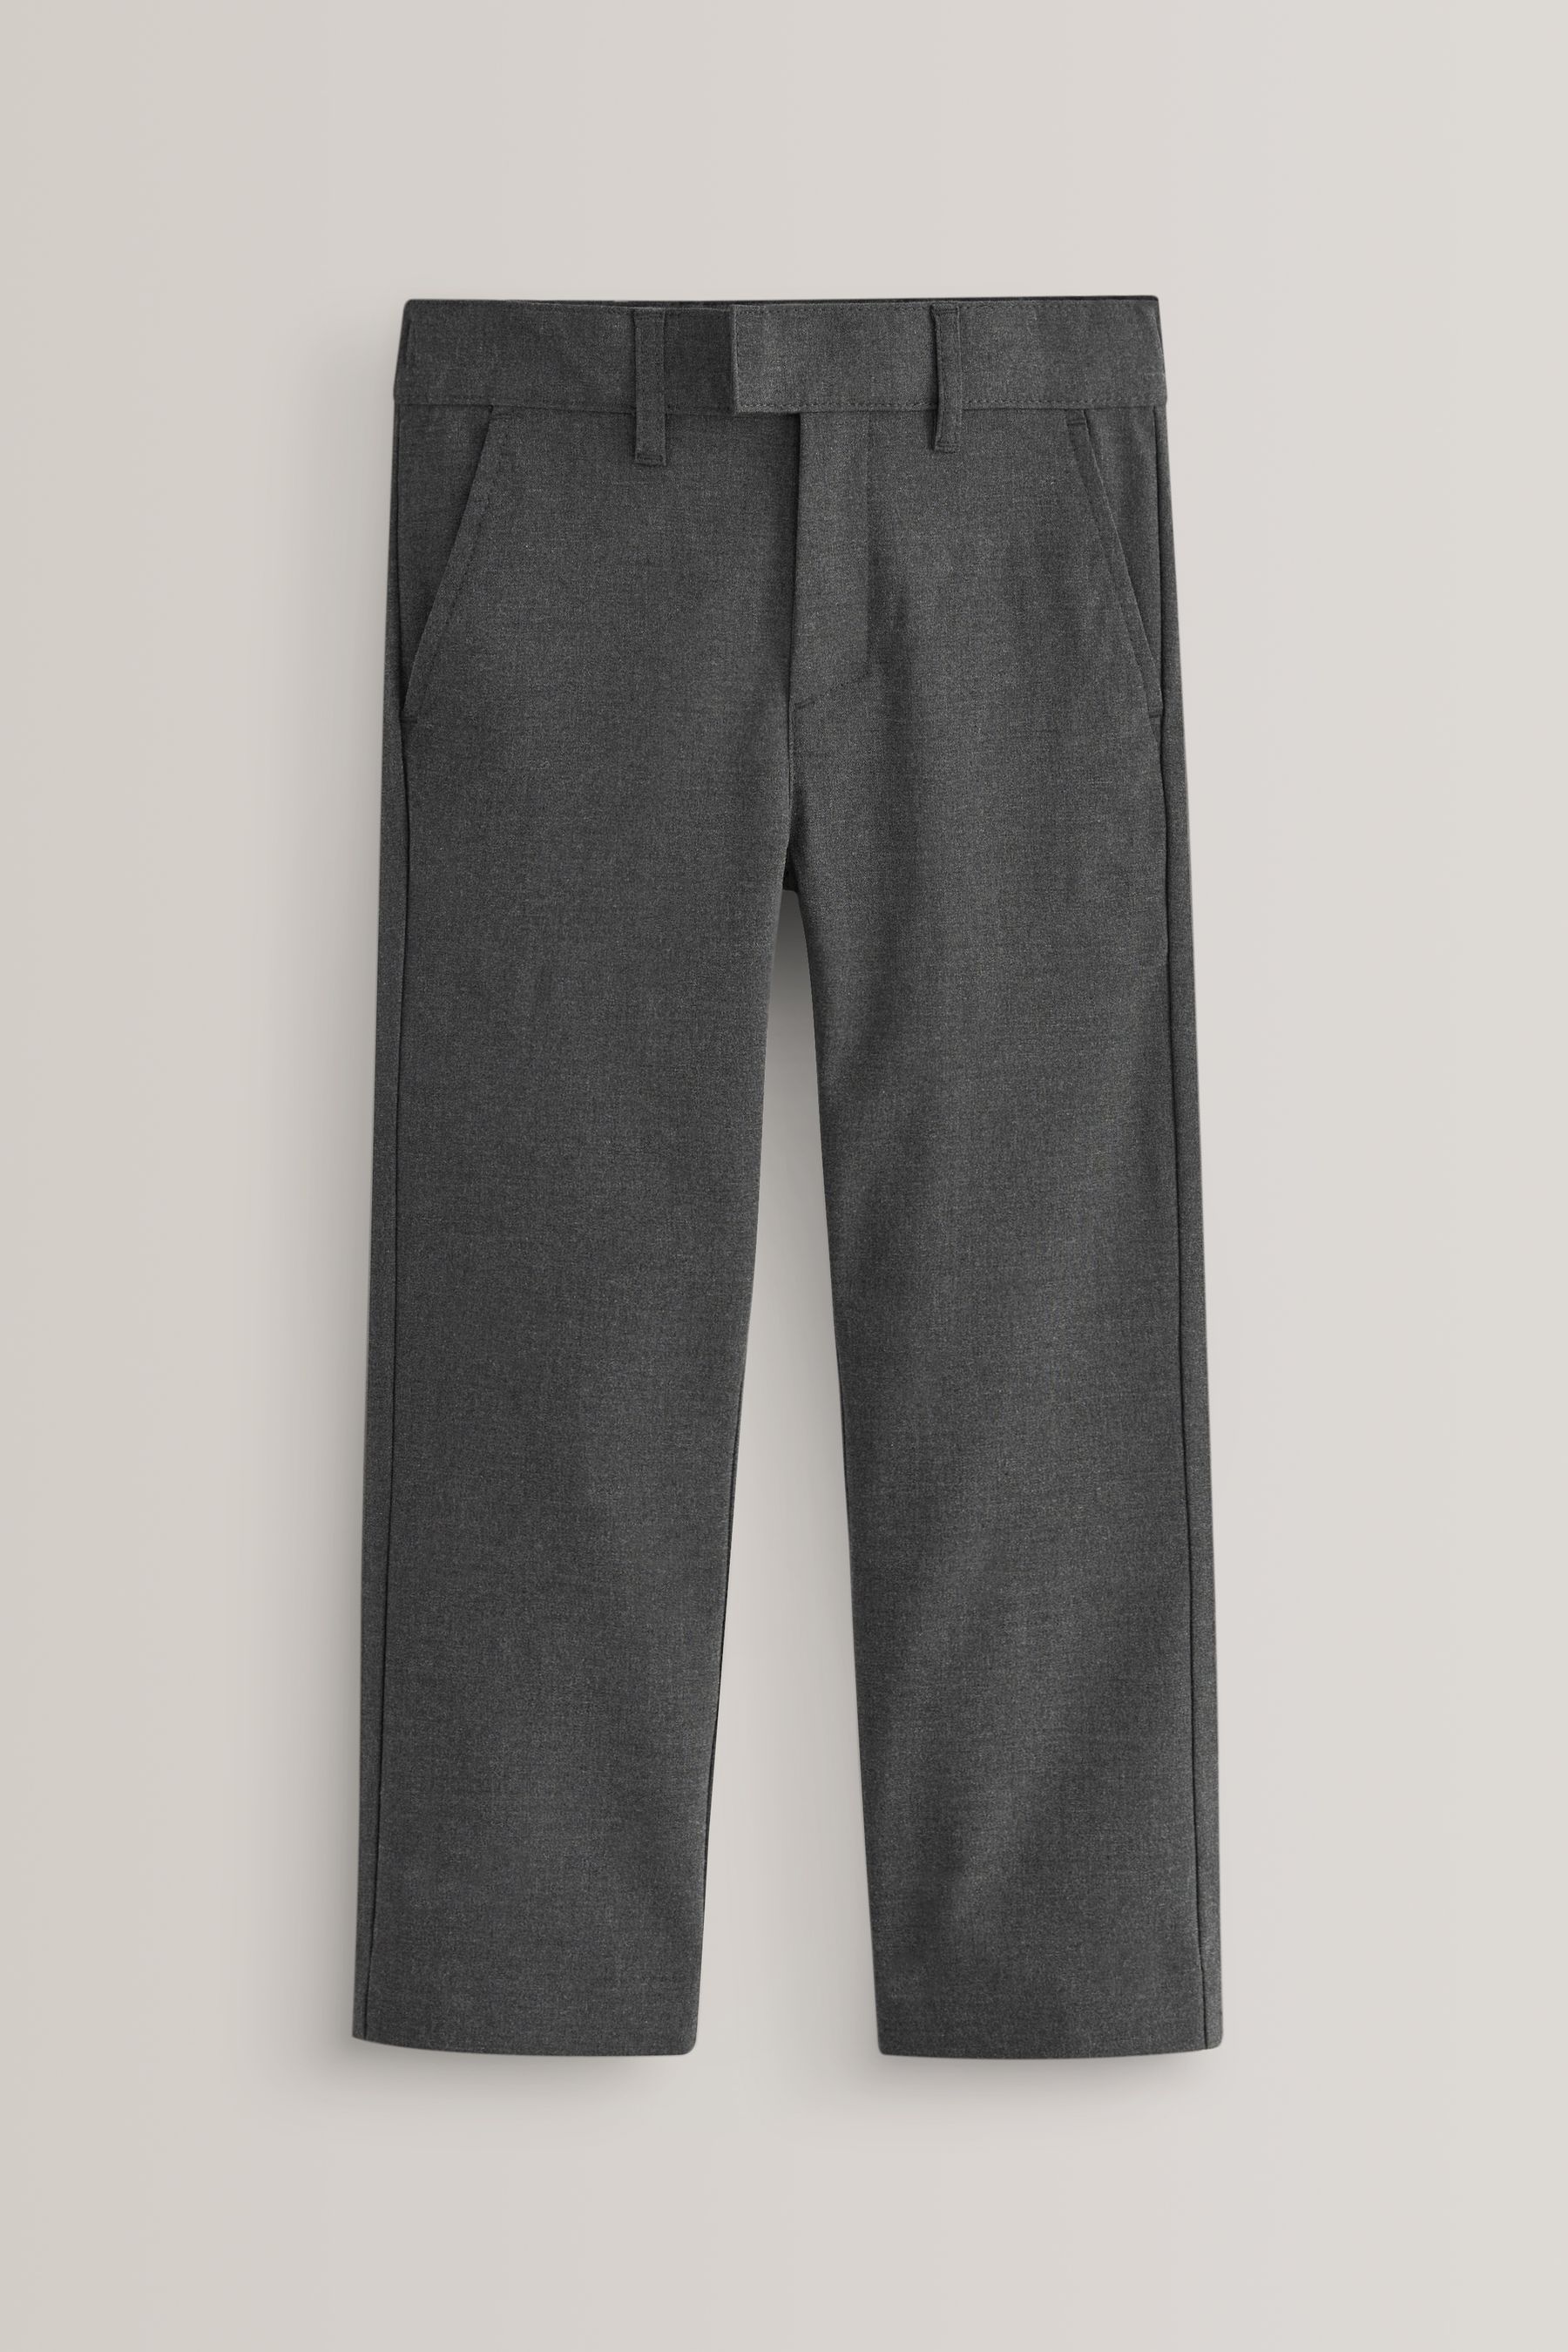 Buy Grey Regular Waist School Formal Stretch Skinny Trousers (3-17yrs ...